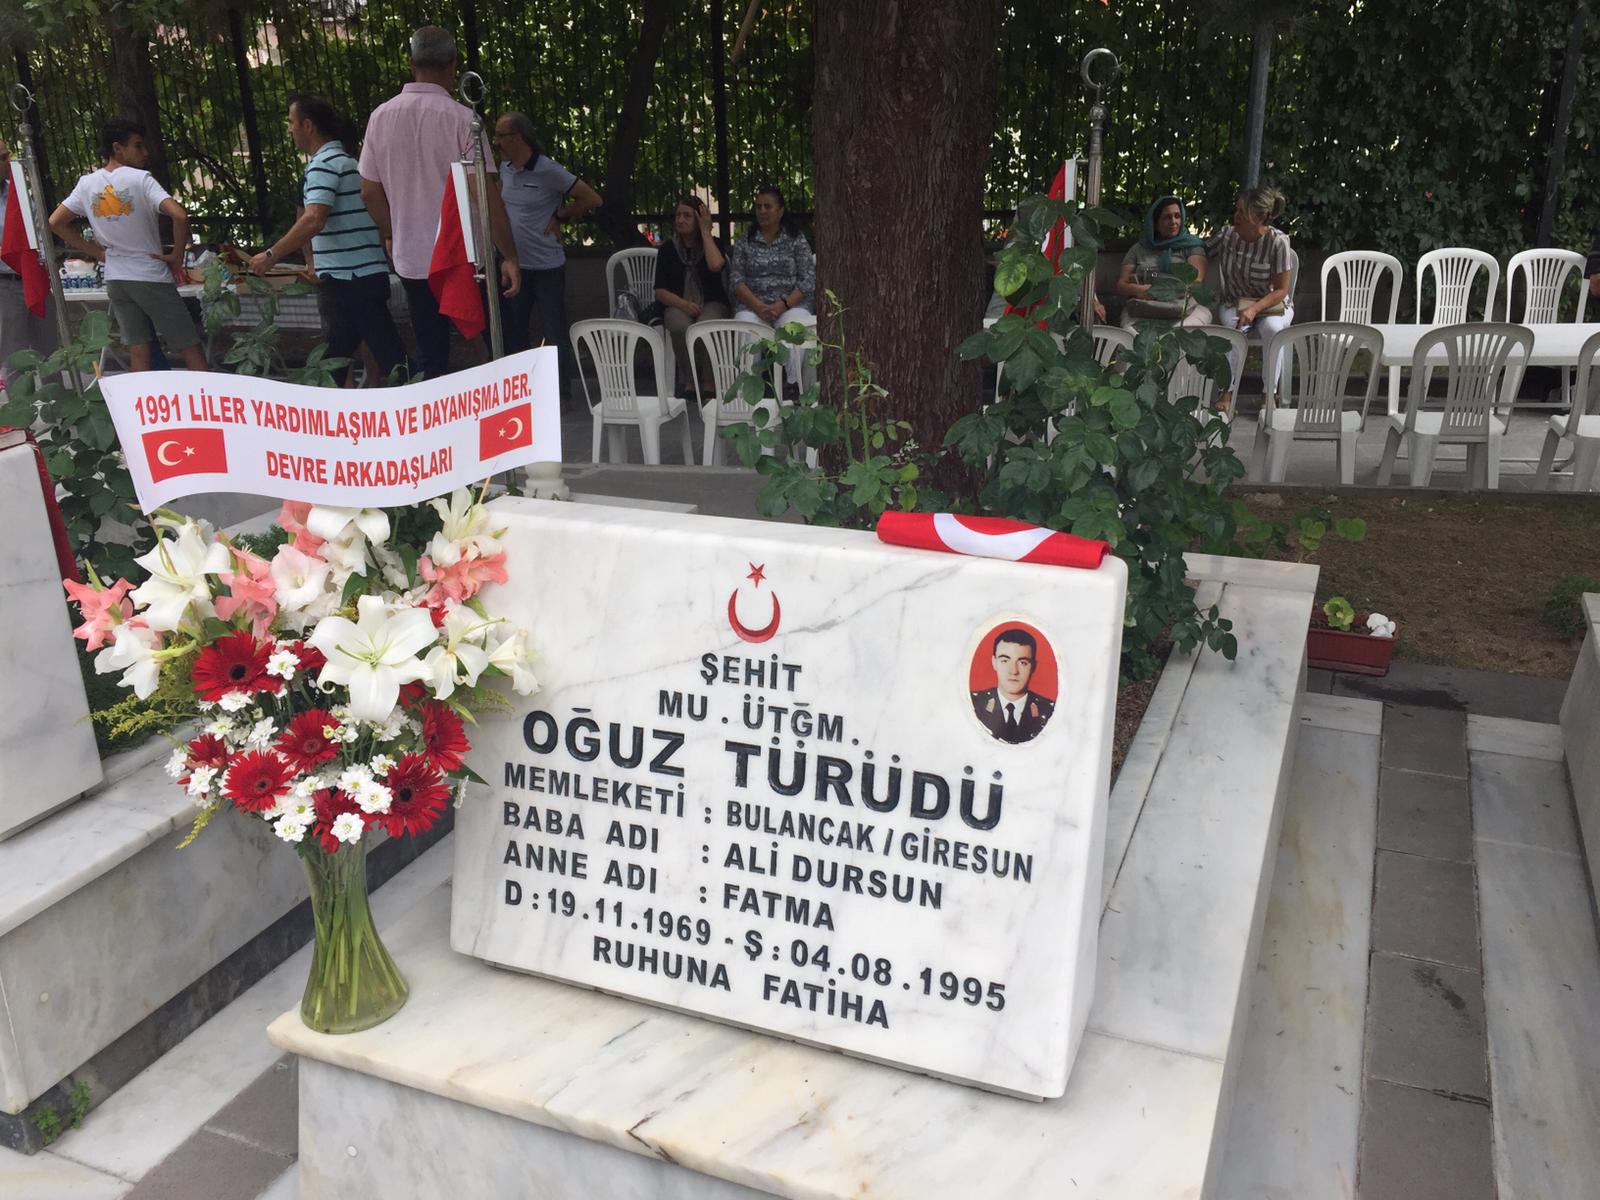 137- Şehit Üsteğmen Oğuz TÜRÜDÜ Anma Töreni (04.08.2019)